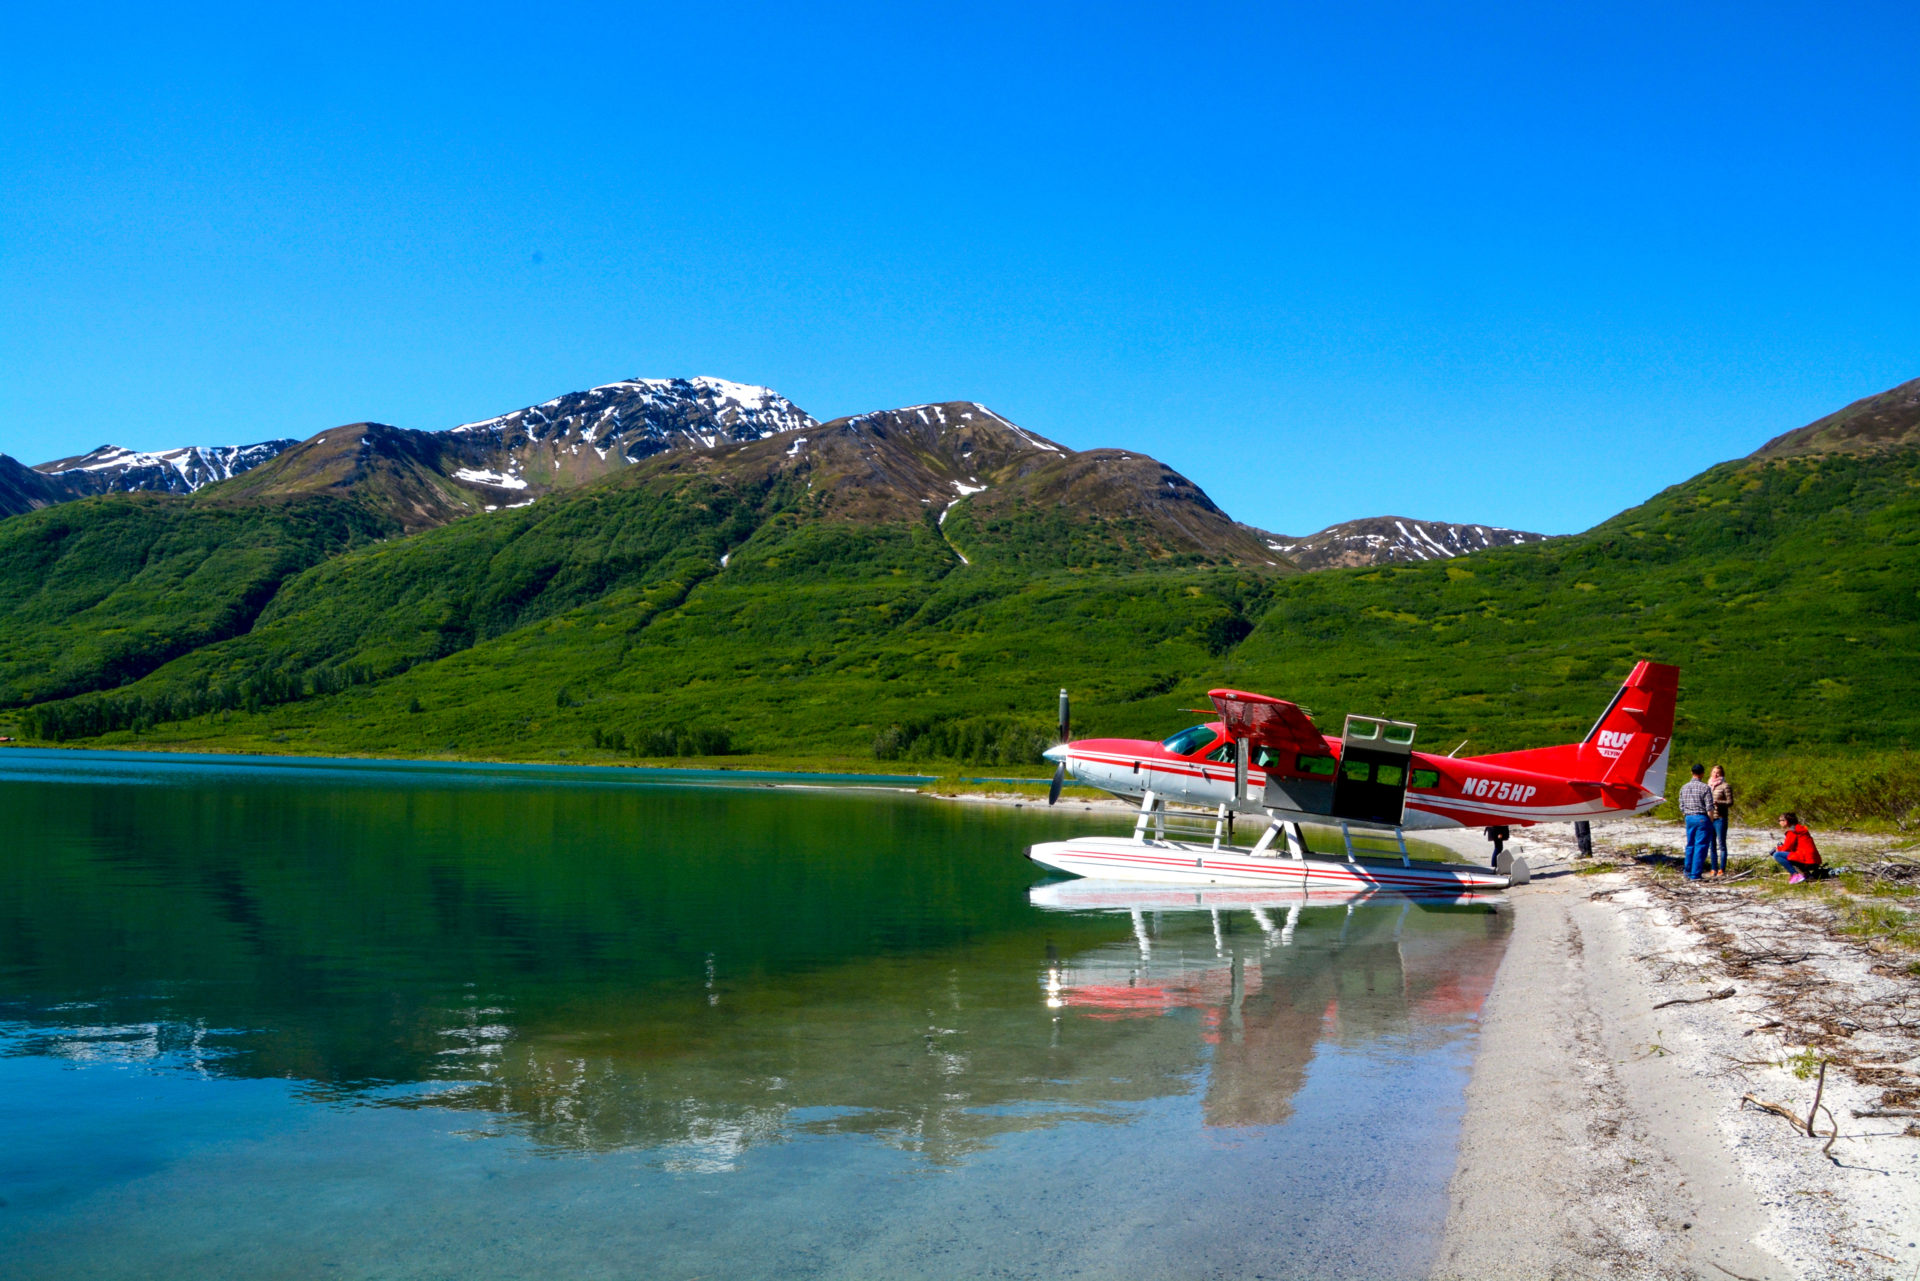 Einsamer Bergsee mit Wasserlfugzeug beim Rundflug über den Denali in Alaska